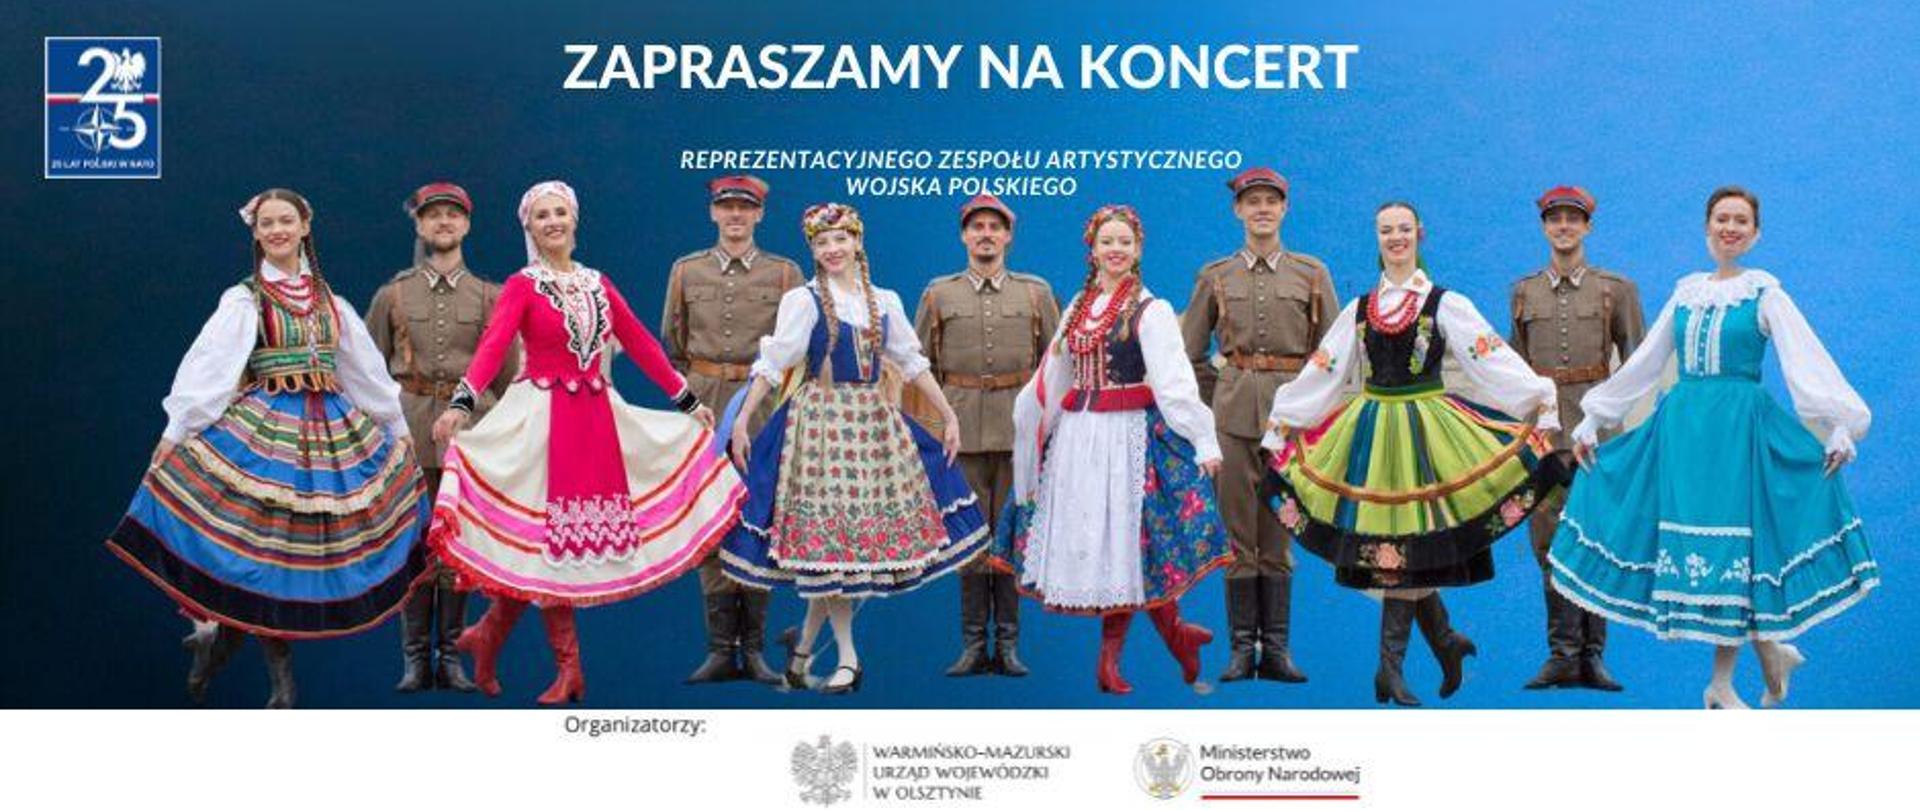 Zapraszamy na koncert Reprezentacyjnego Zespołu Artystycznego Wojska Polskiego